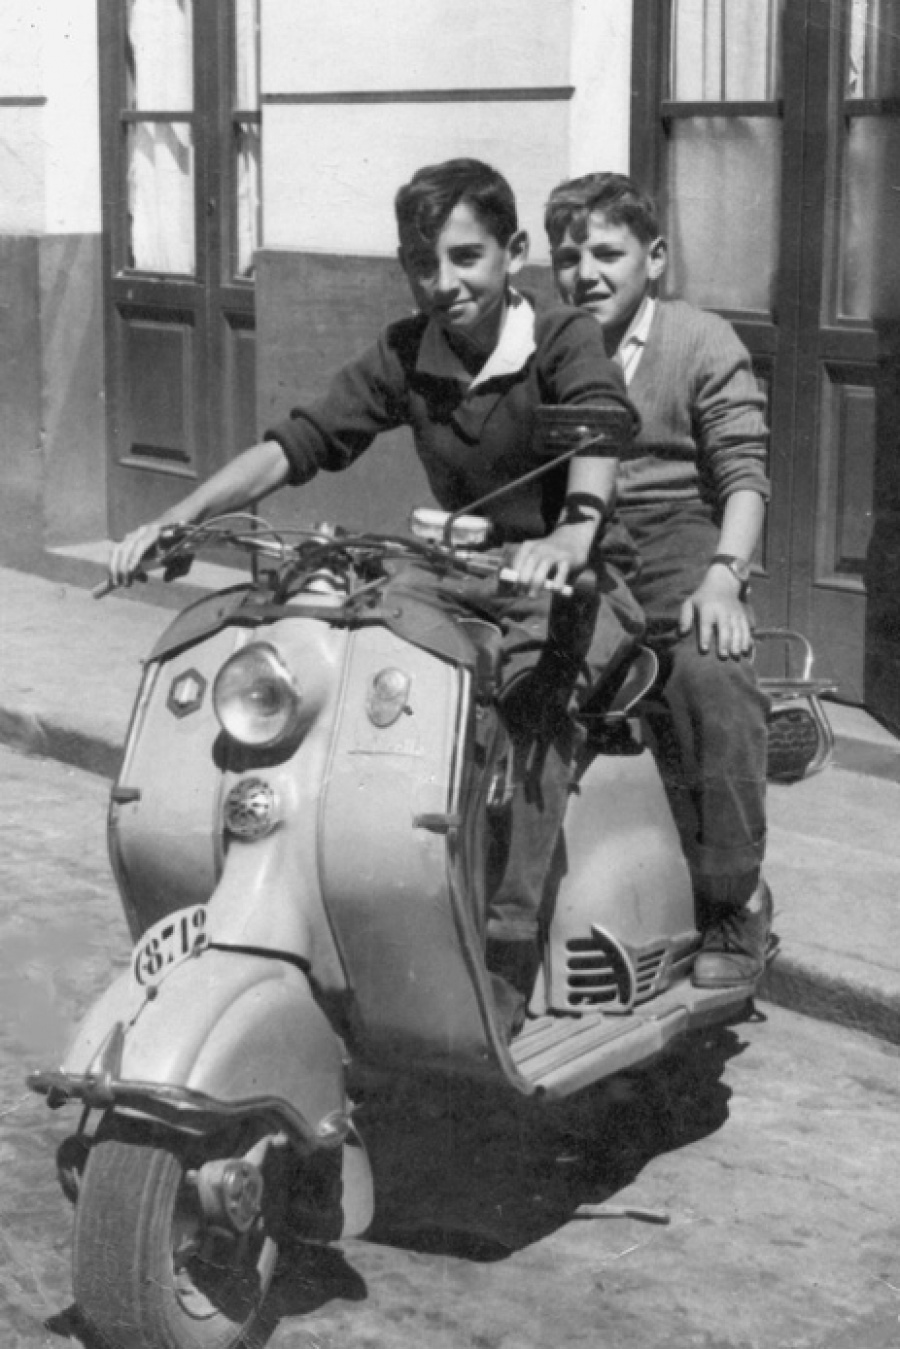 1960 - Sentados en la Vespa